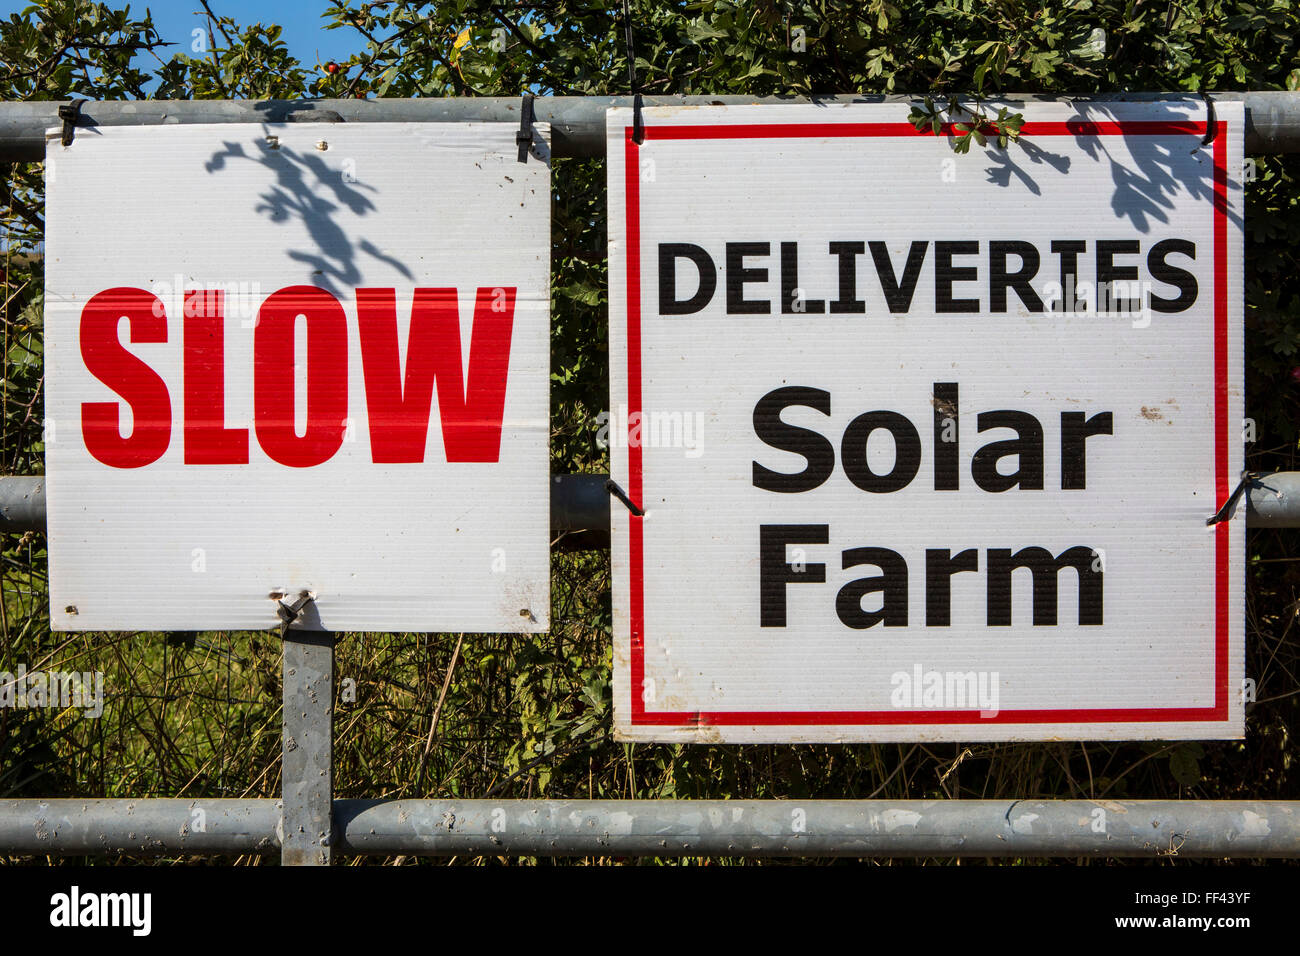 Der Solarpark Lieferung Schild Braydon Manor Farm Website wo Solarcentury begann mit dem Bau von Wiltshire Tierwelt Gemeinschaft Energie (WWCE) 5MWp gemeindeeigenen Solarpark. Über 18 Hektar mehr als 18.000 Sonnenkollektoren installiert werden und das Sonnensystem erzeugt genug Energie, um mehr als 1.400 Haushalte und 2.500 Tonnen Kohlendioxid pro Jahr zu sparen Stockfoto